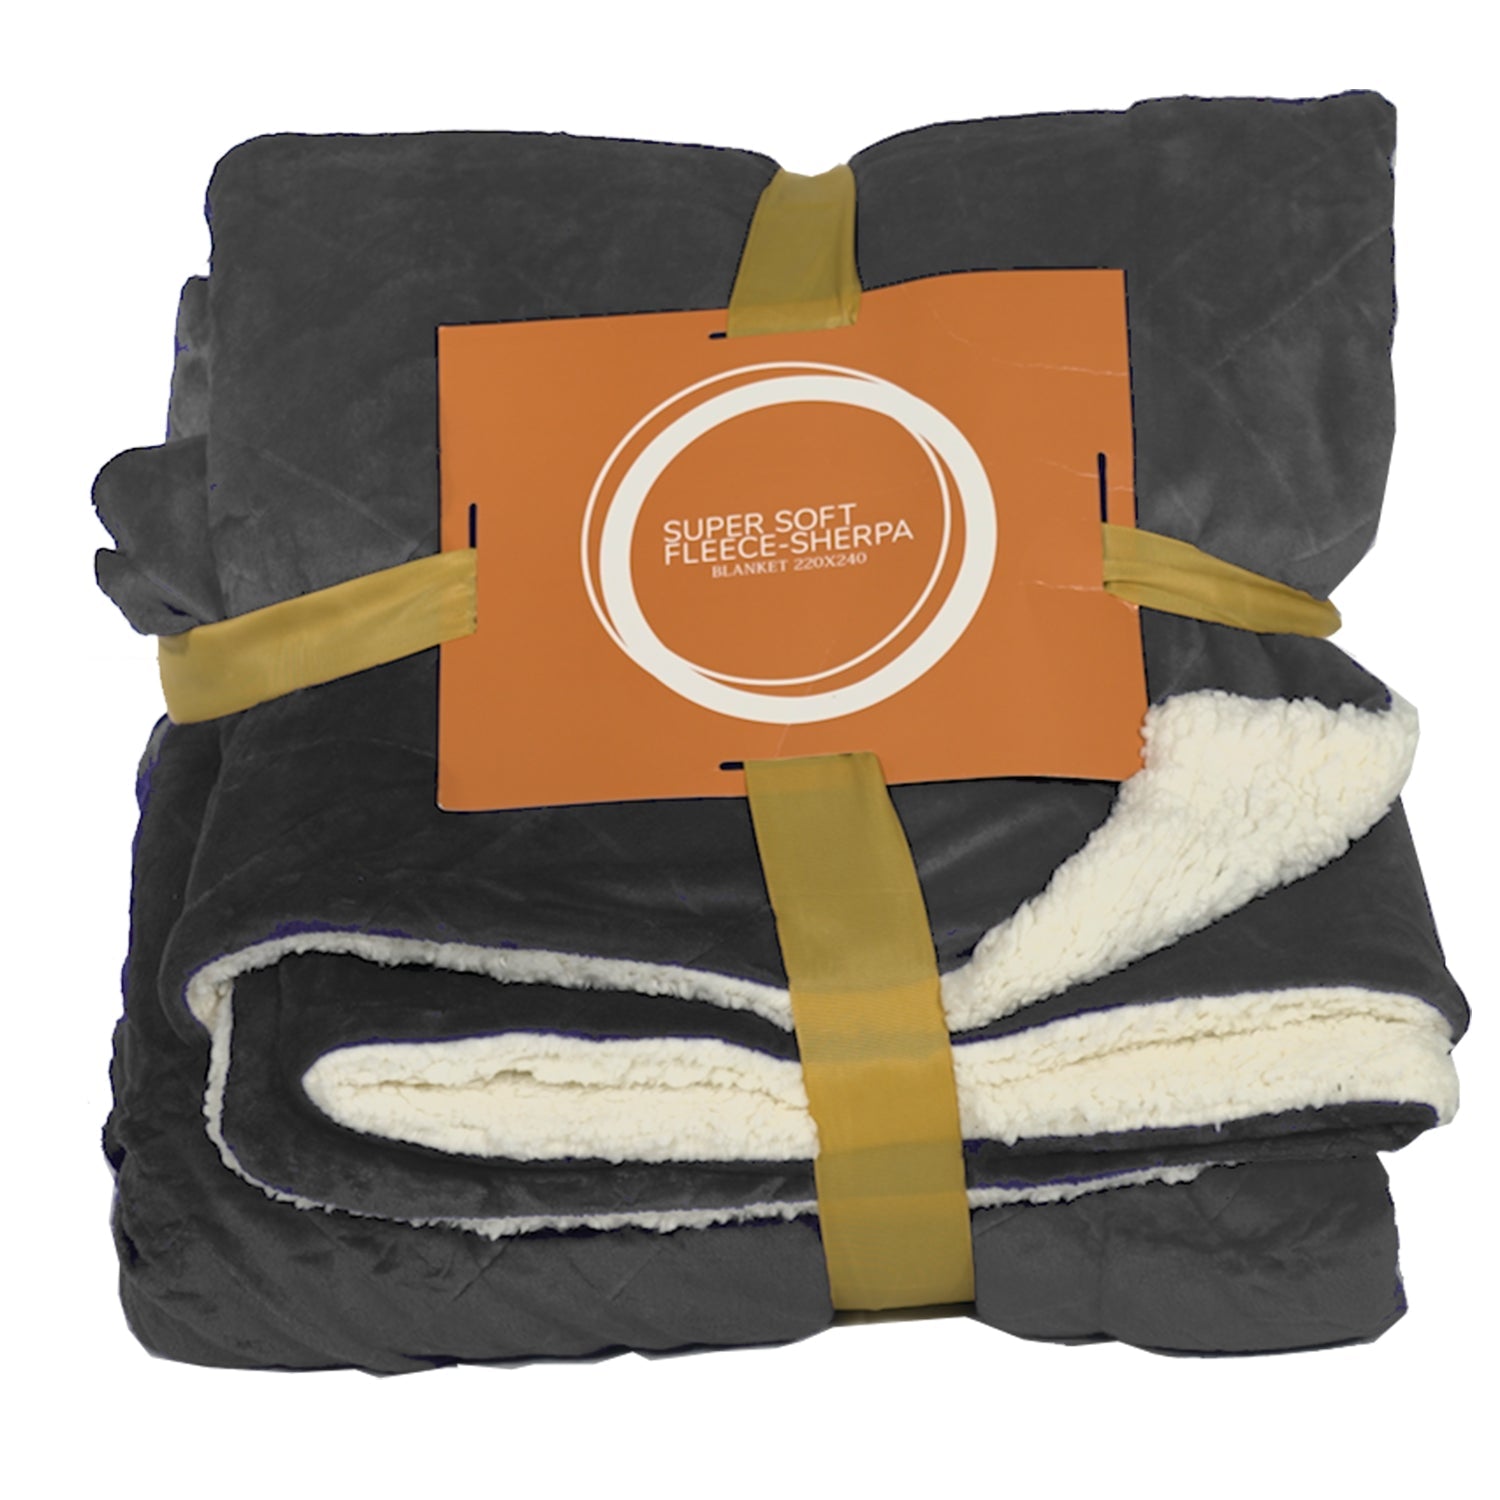 Κουβέρτα Προβατάκι Super Soft Fleece Sherpa by QUEEN - ΚΟΥΒΕΡΤΕΣQueen®The GrBazaar of Brands